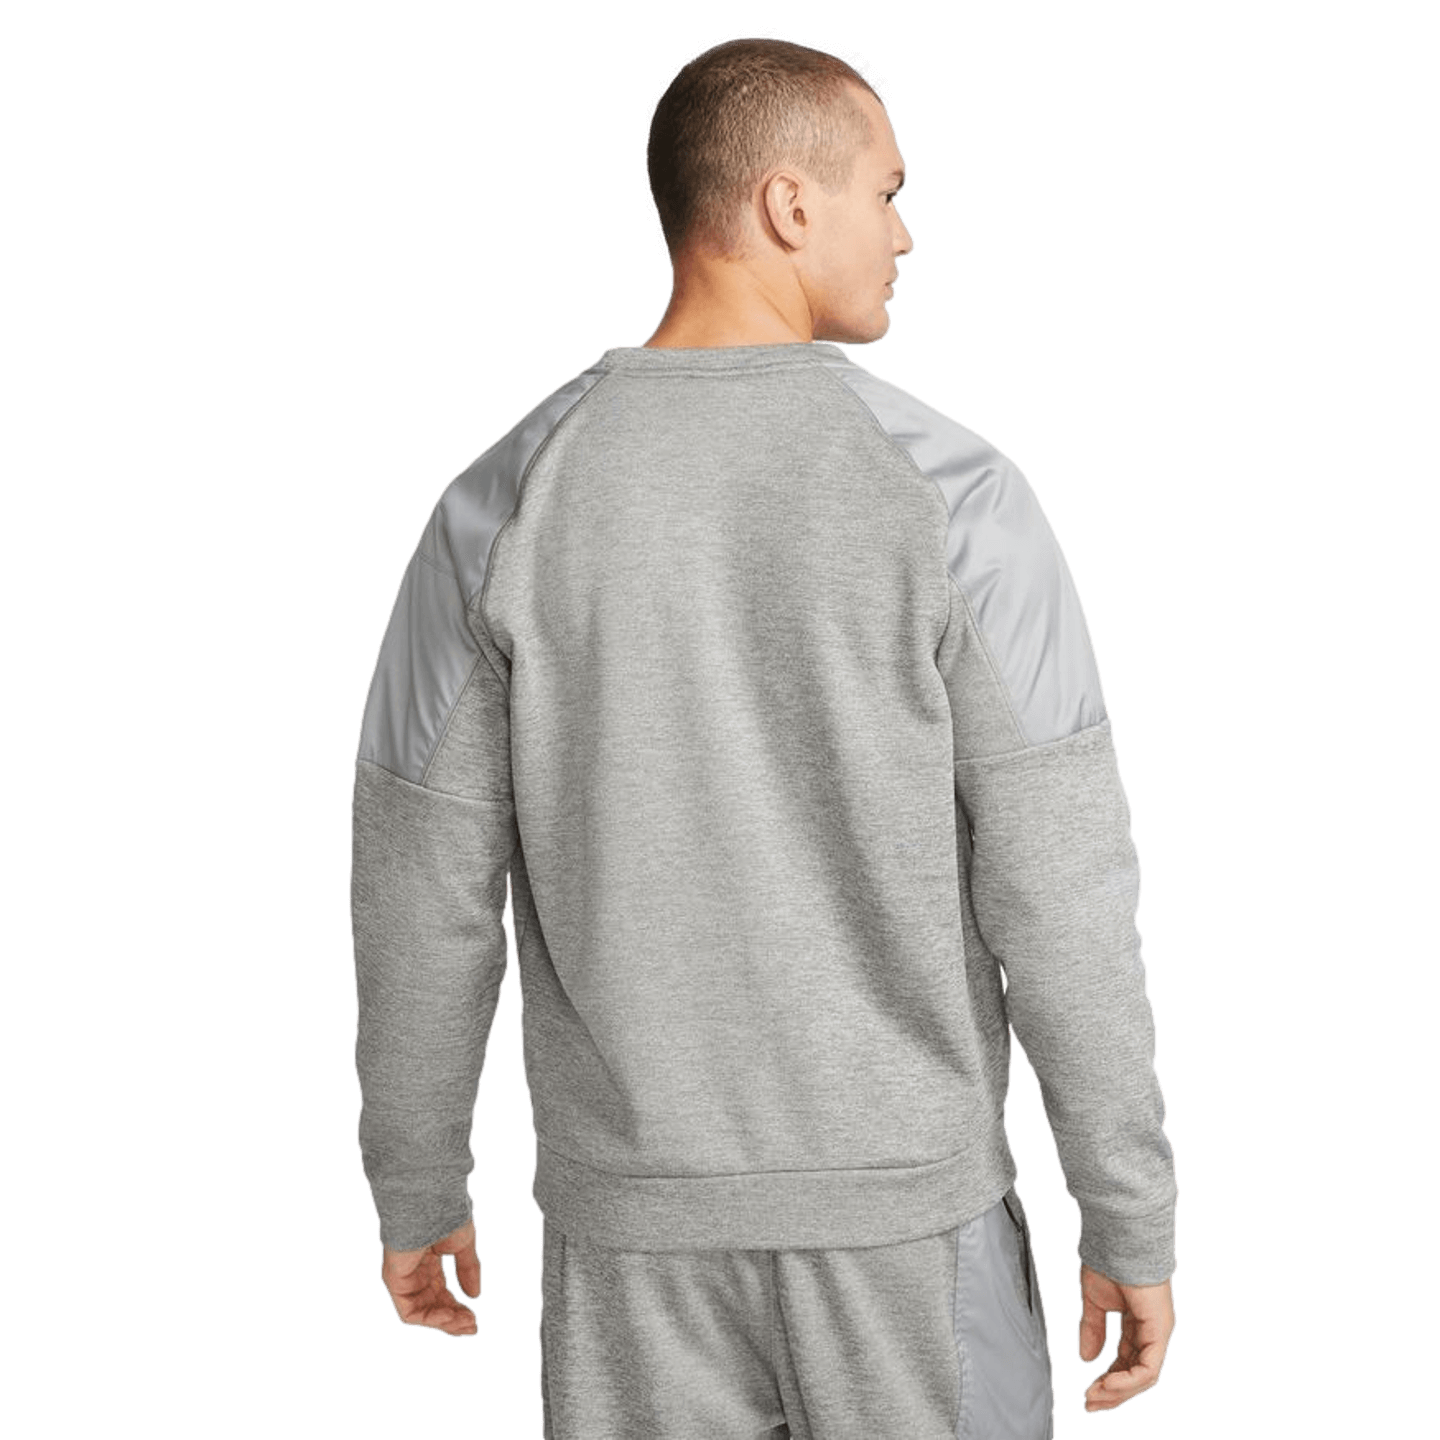 Nike Men's Therma-FIT Crew Fleece Sweatshirt - Grey